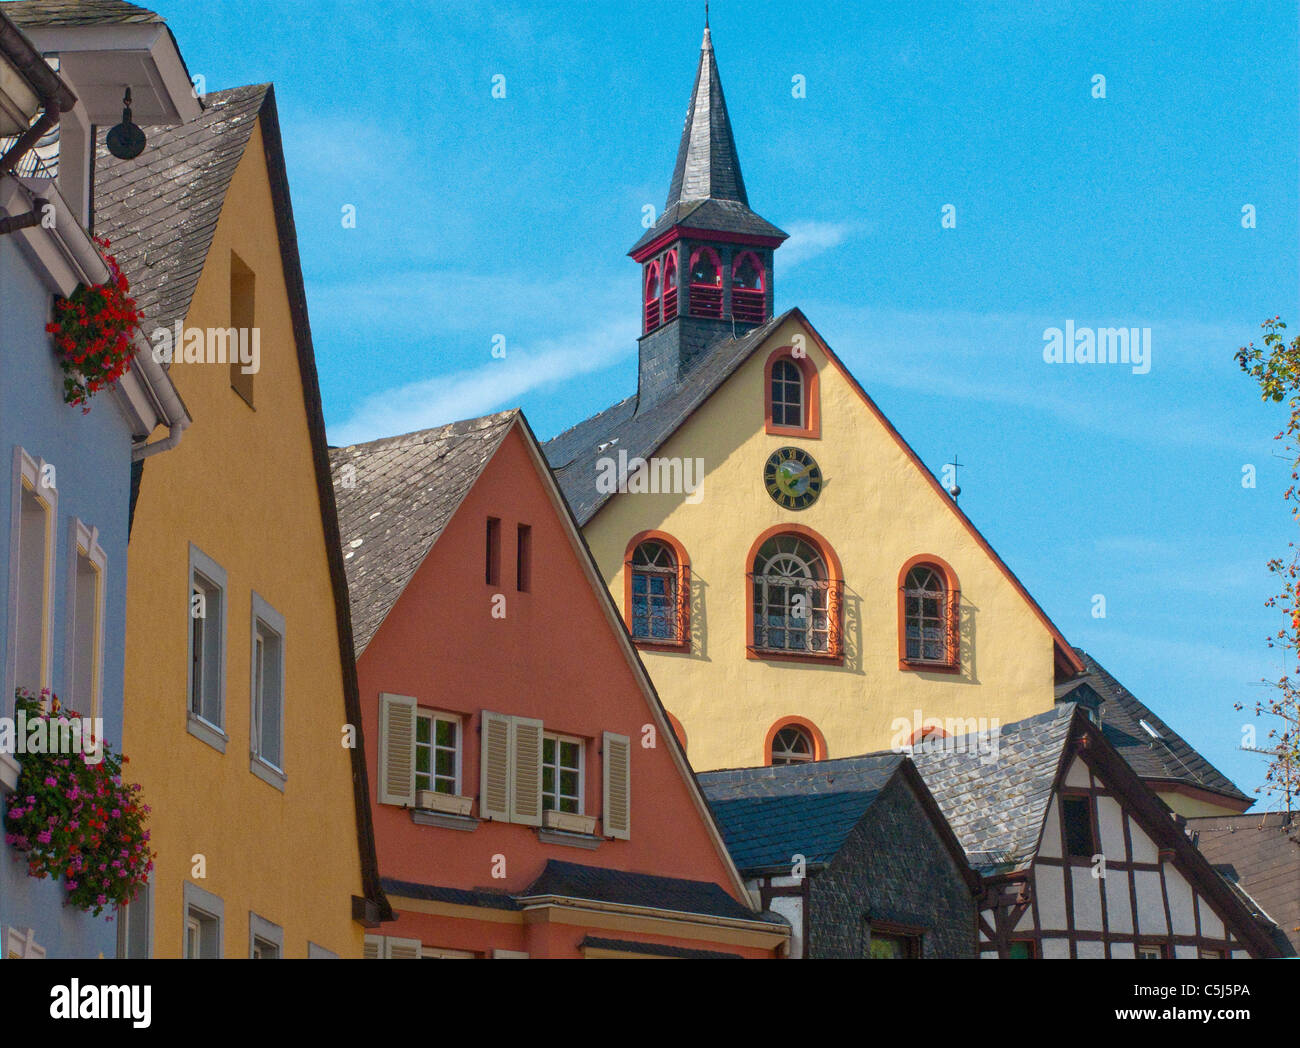 Bunte Haeuser in der Altstadt, historischer Stadtkern, Bernkastel-Kues, Mosel, maisons de la vieille ville, de la Moselle Banque D'Images